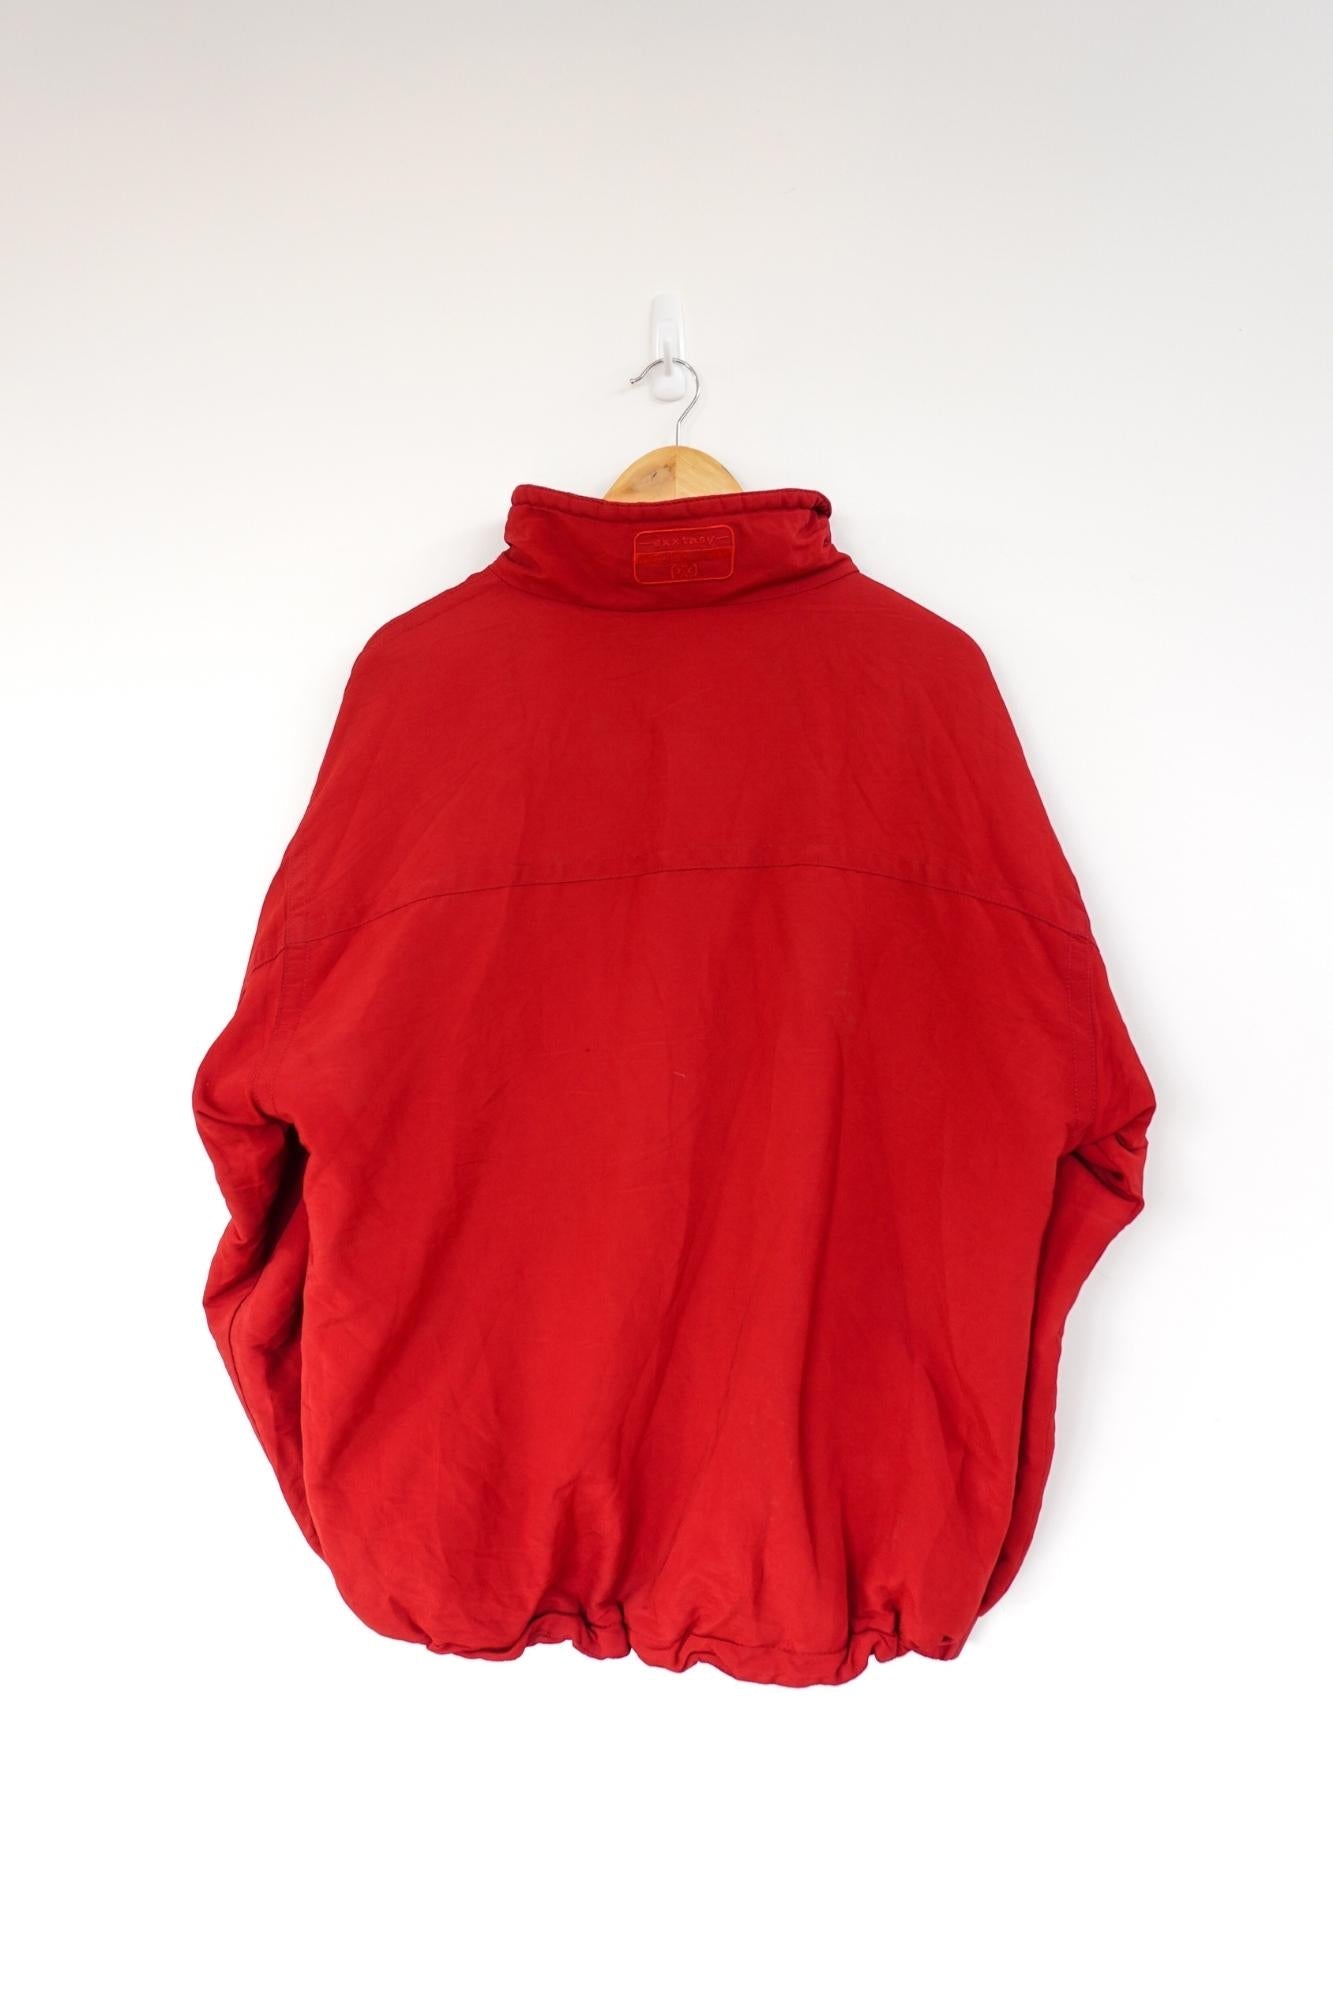 Exxtasy Red Vintage Ski Jacket